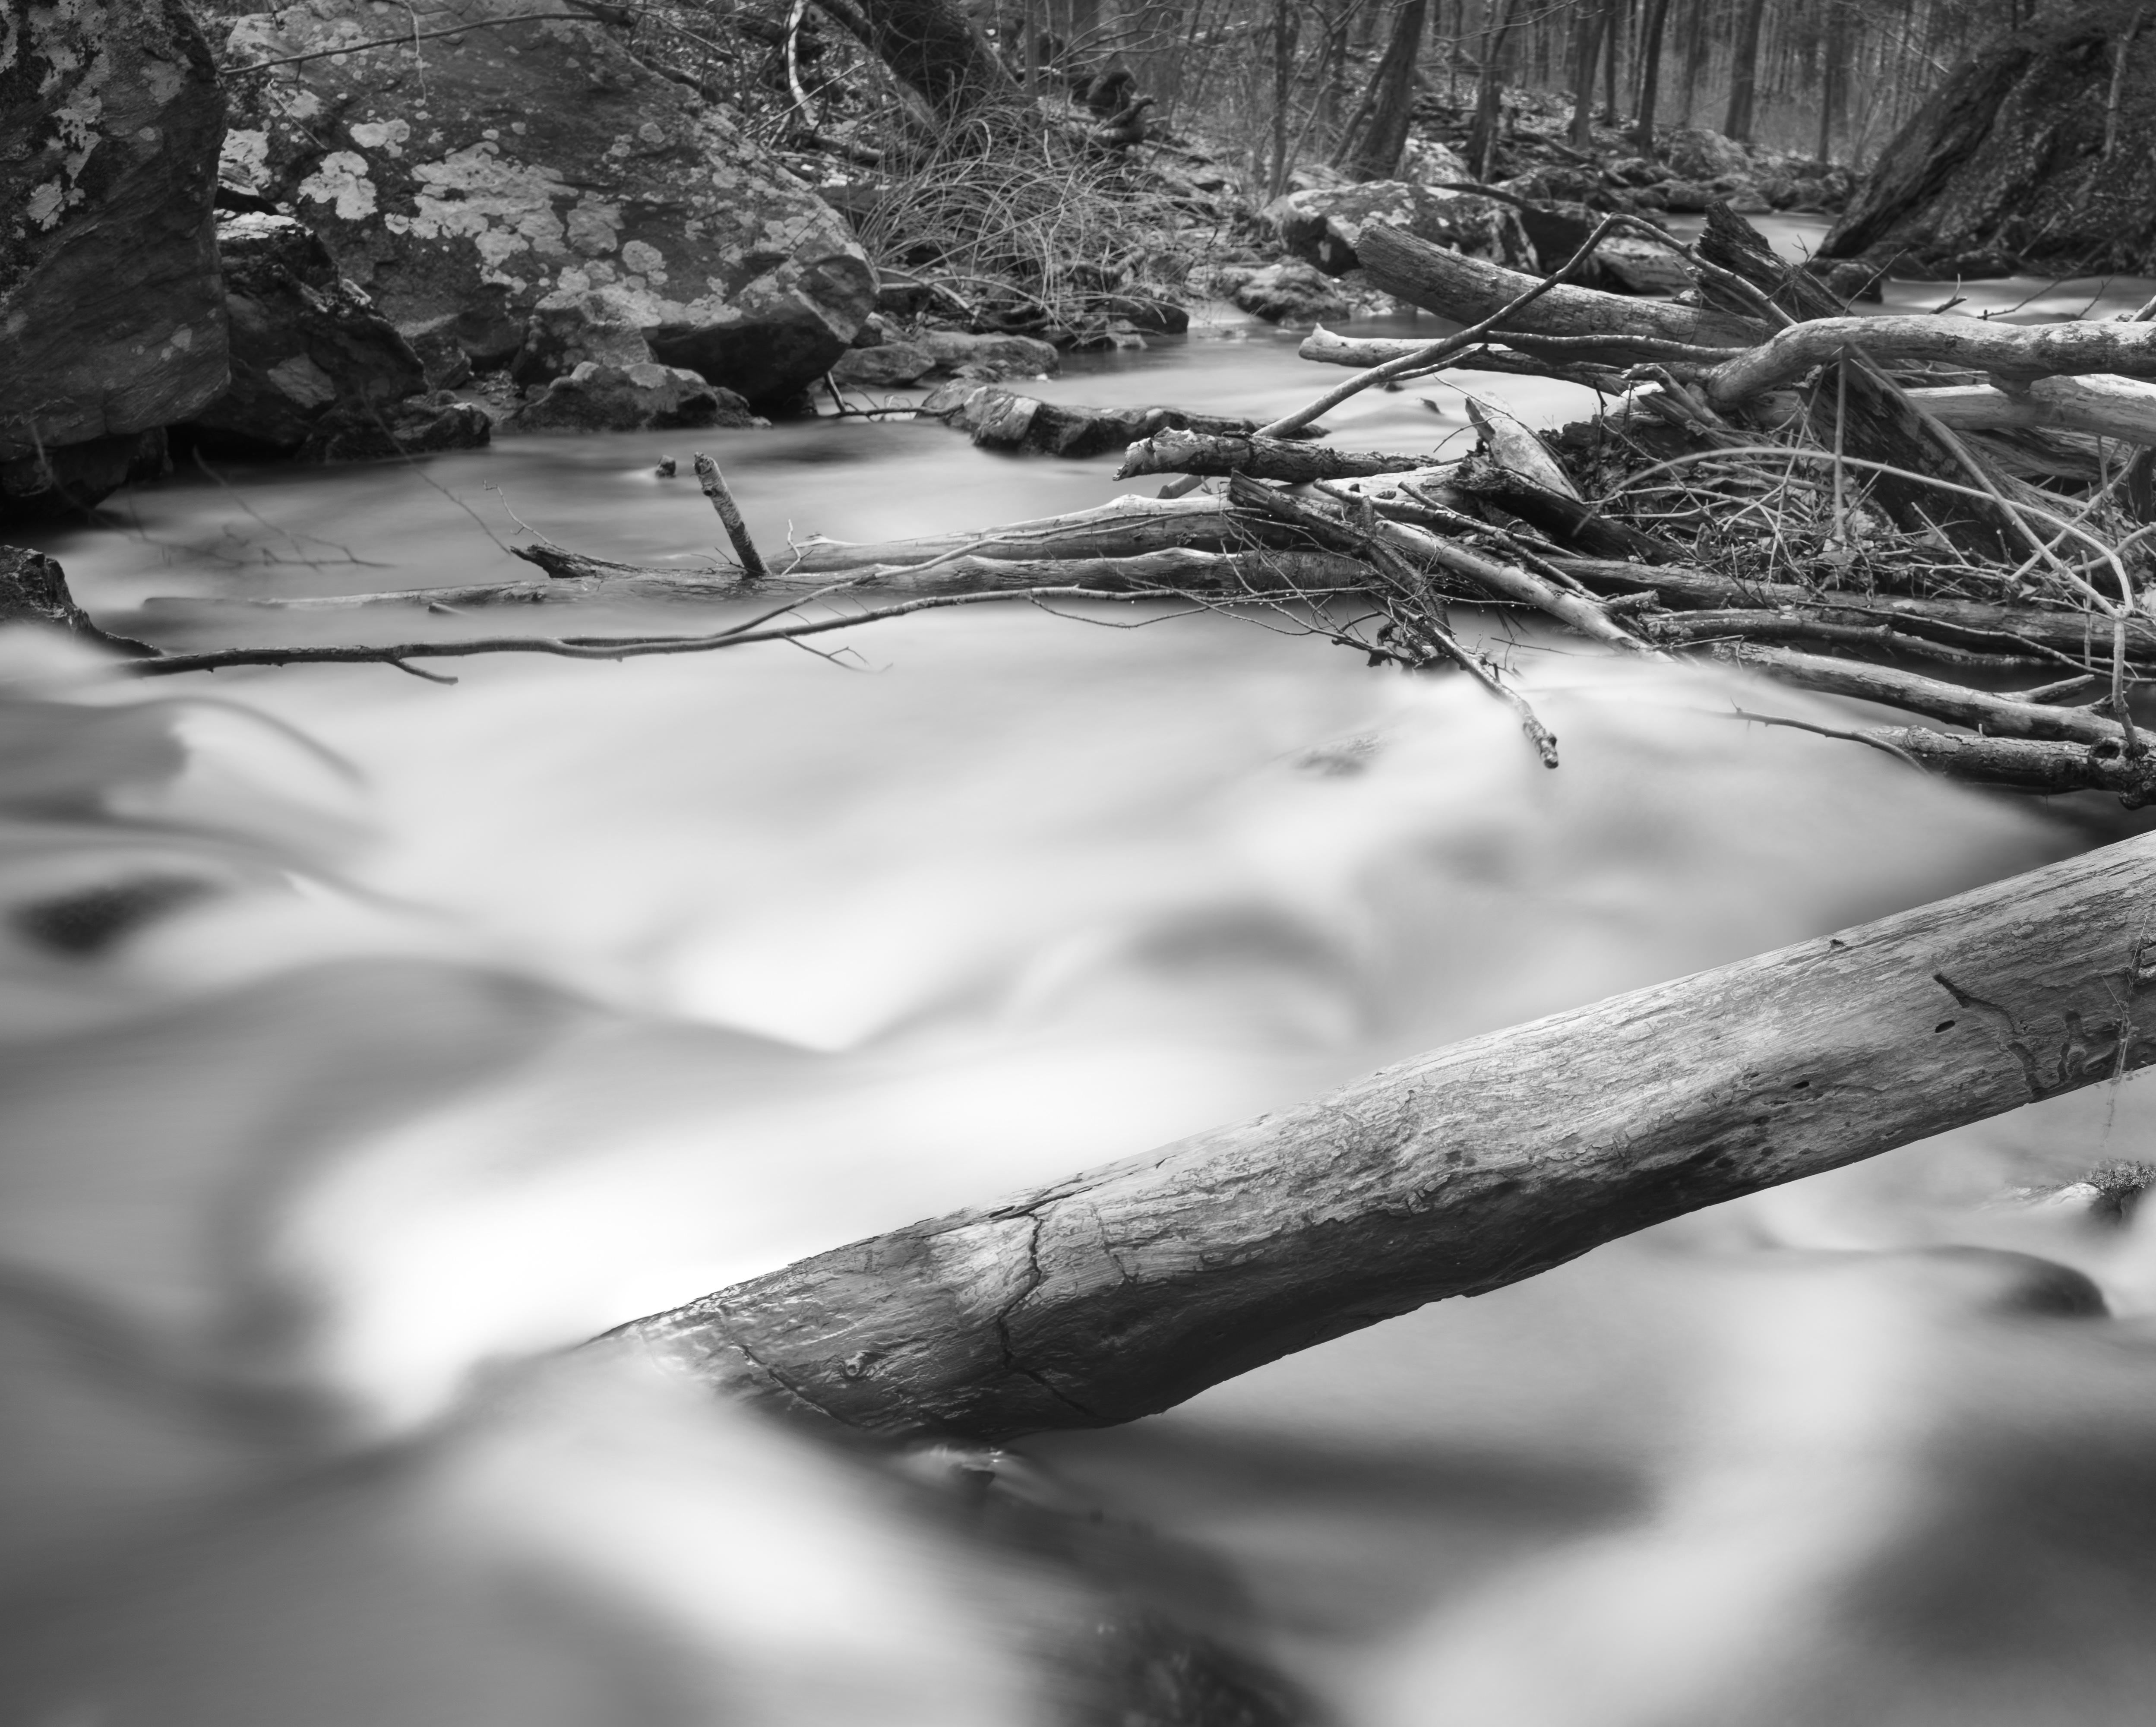  Schwarz-Weiß-Fotografie in limitierter Auflage – „Fallen Tree“ 17 x 22